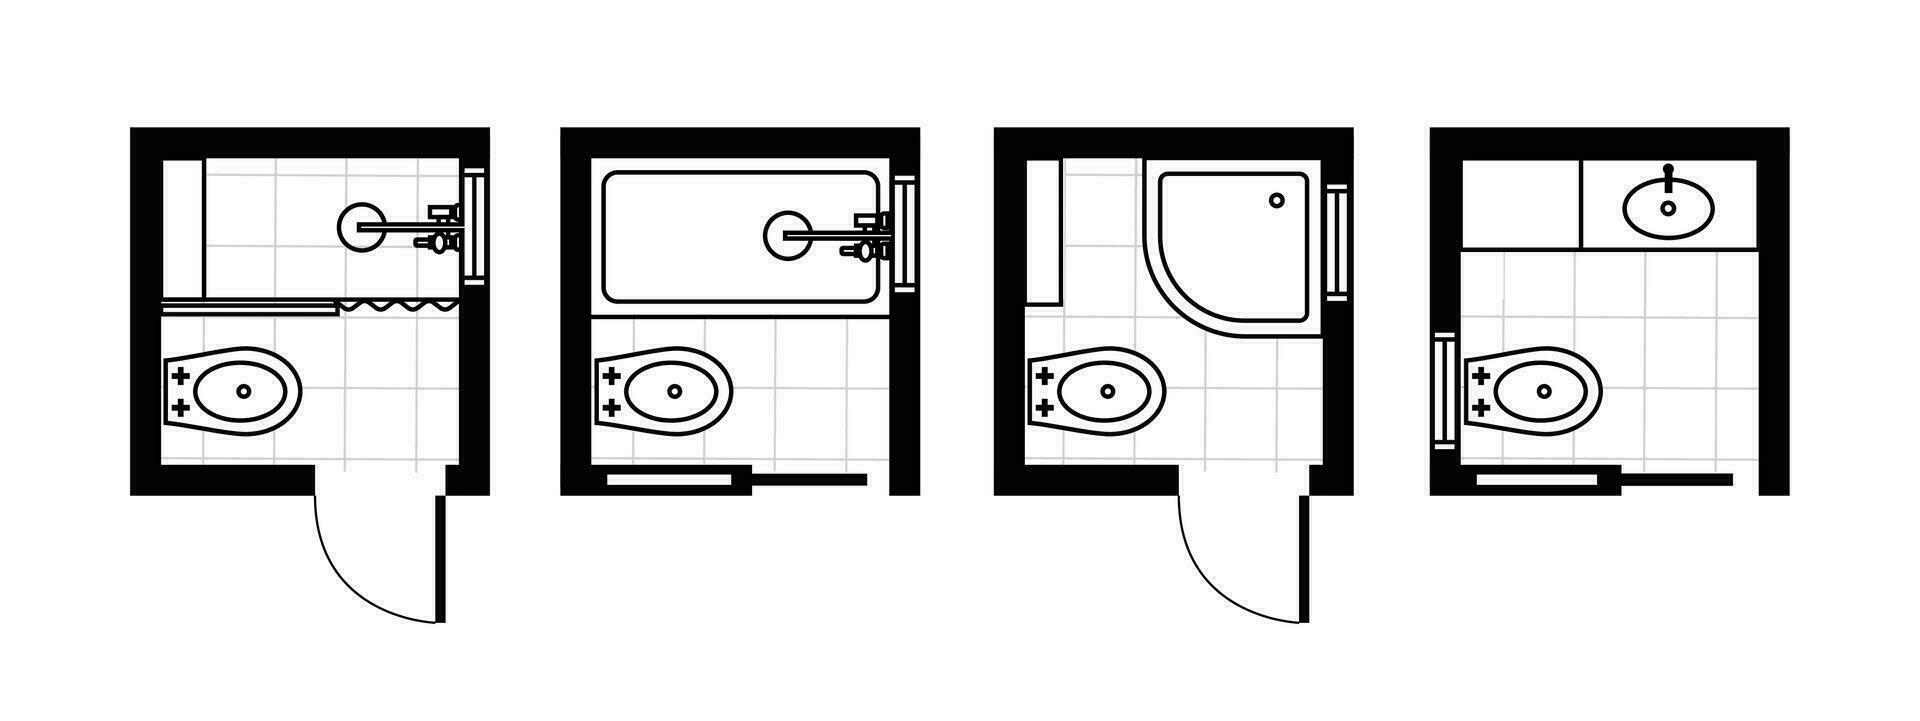 arkitektonisk planer för badrum, studior och hus. interiör golv planen och design element för toalett, handfat, badkar och dusch vektor